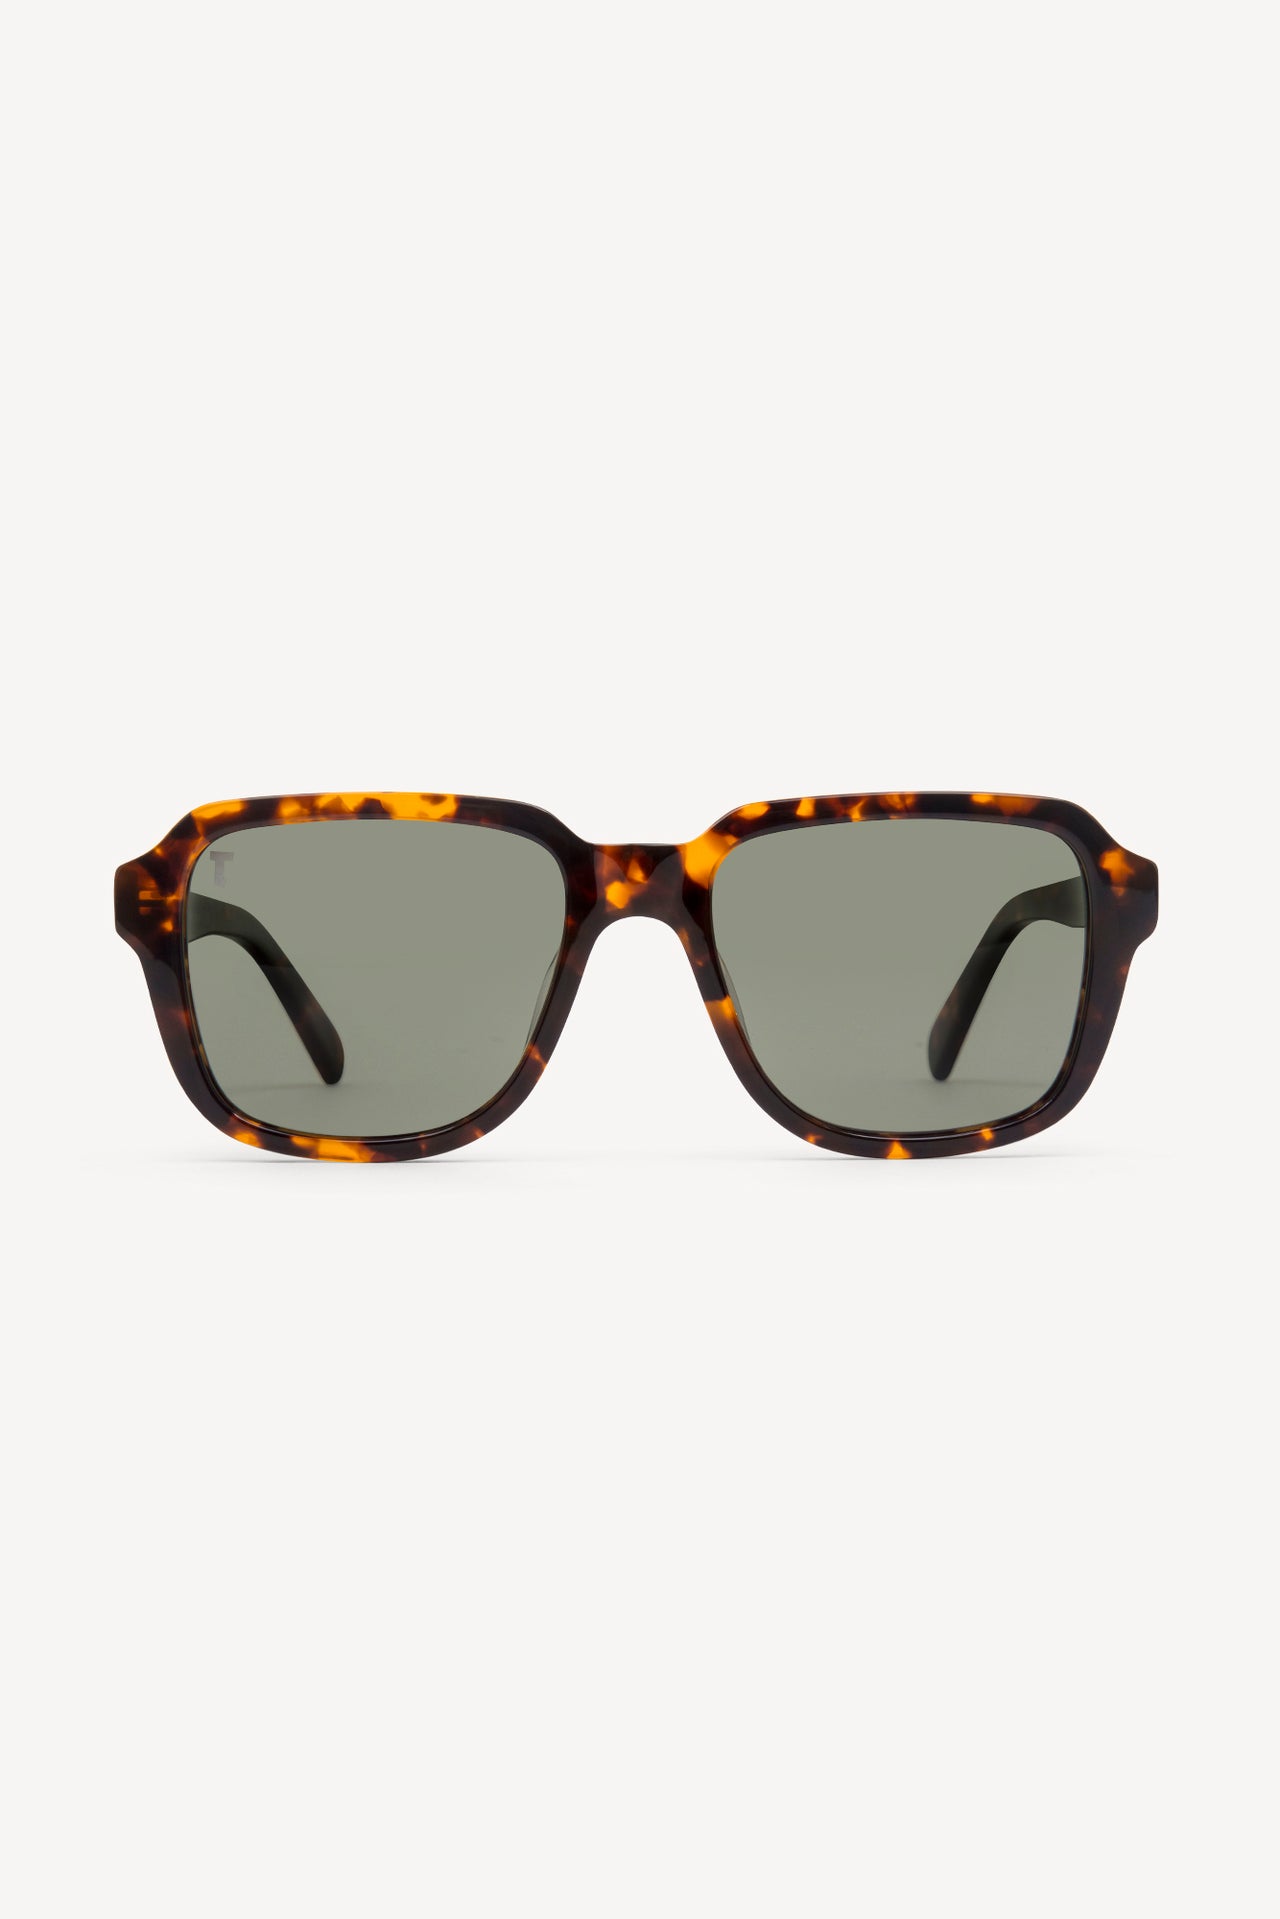 TOATIE Casablanca Square Sunglasses TORTOISE/GREEN